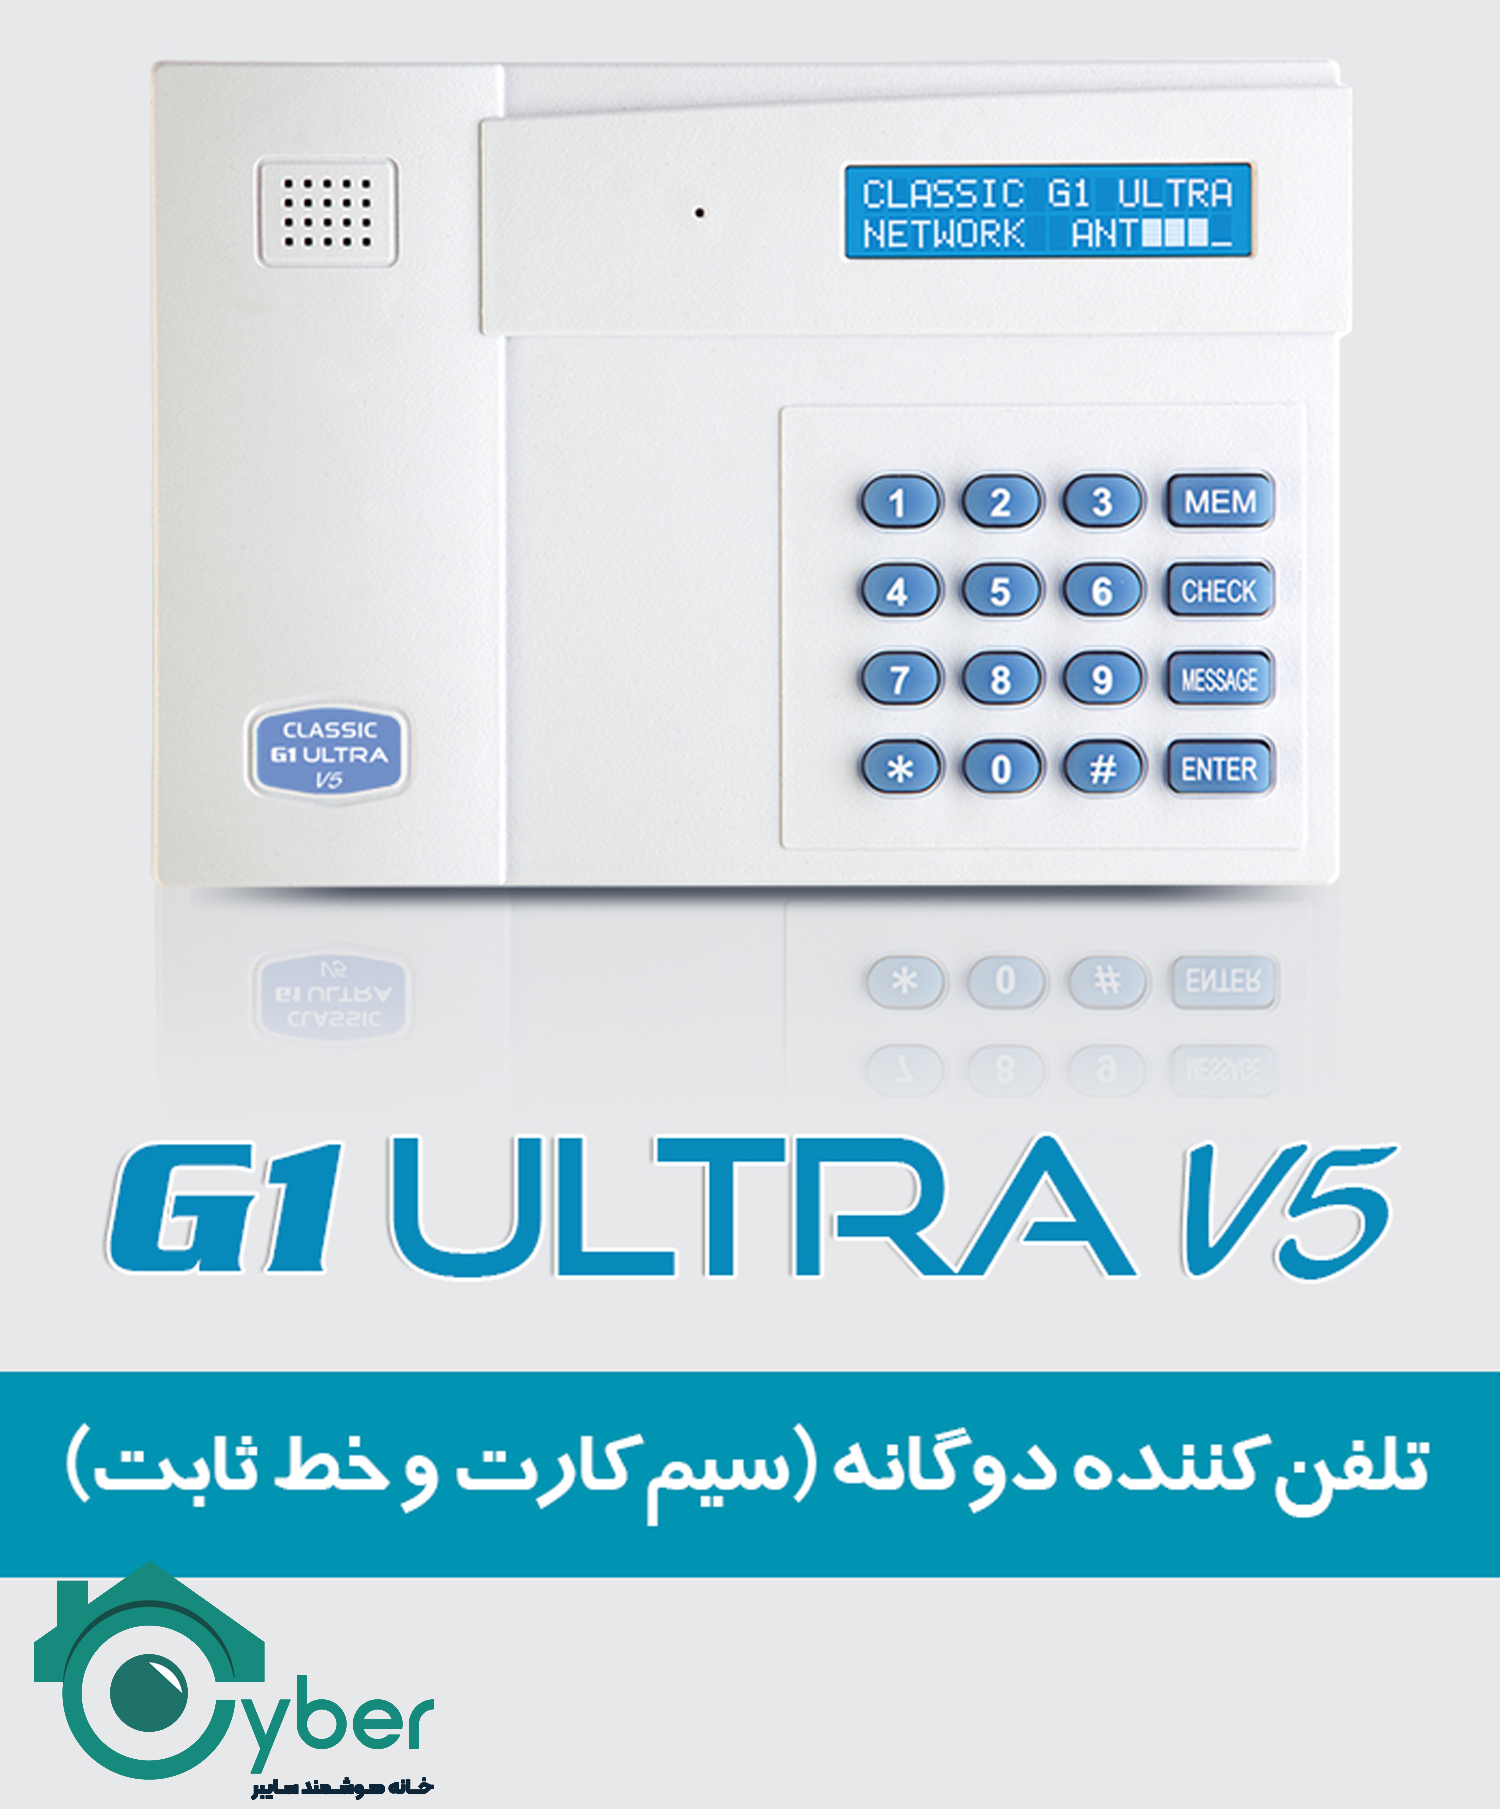 تلفن کننده سیمکارتی و تلفنی CLASSIC - کلاسیک مدل G1ULTRA V5